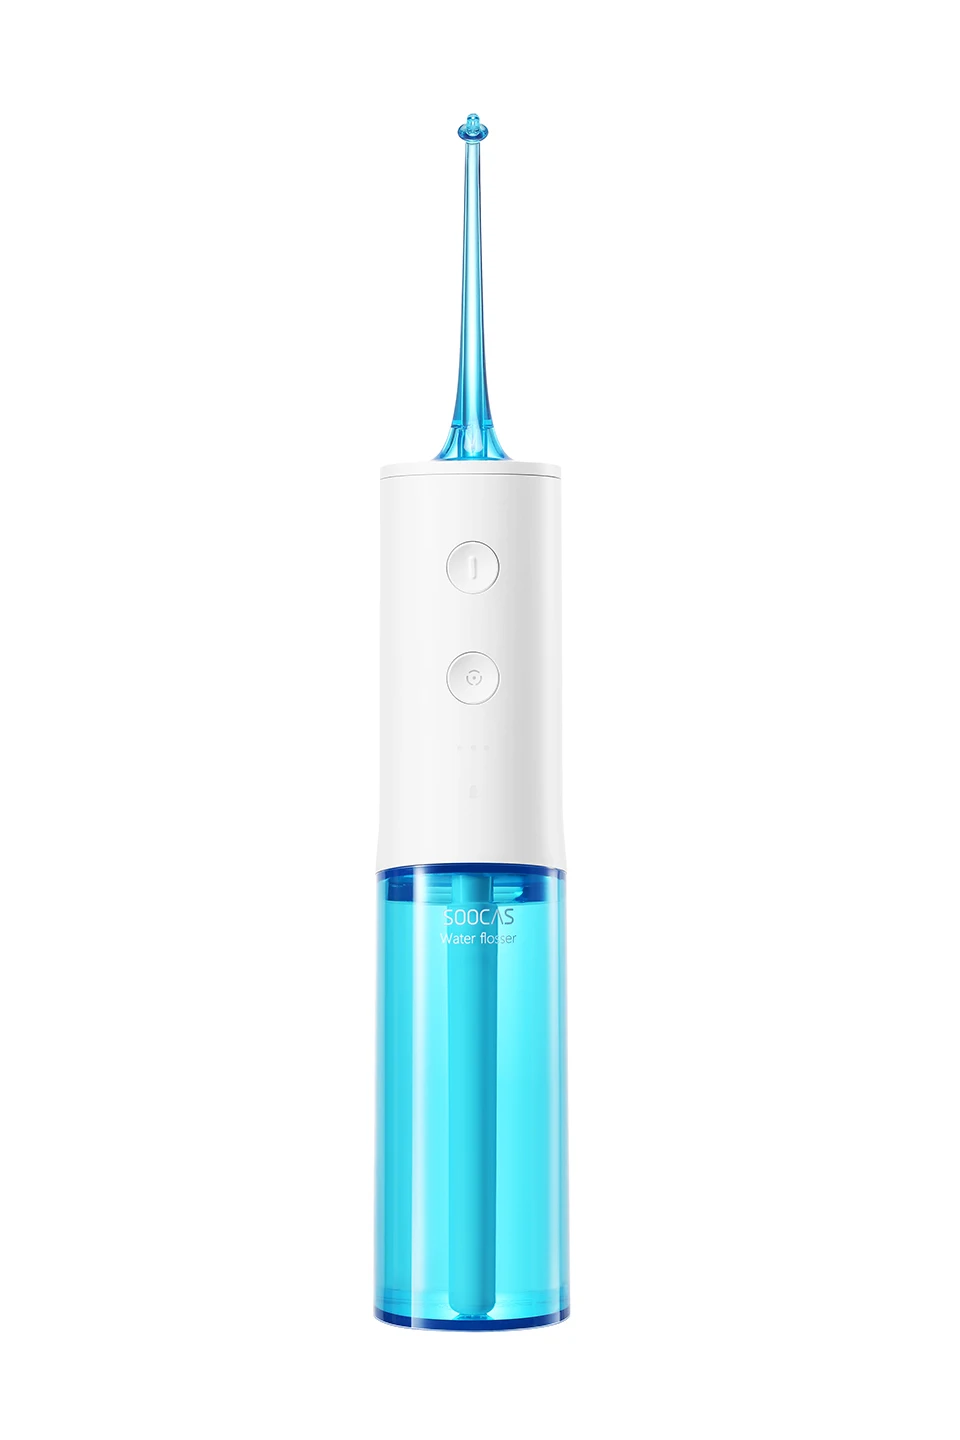 Soocas W3 ирригатор для полости рта стоматологический портативный водный Флоссер советы Usb аккумуляторная струя воды Флоссер Ipx7 ирригатор для чистки зубов